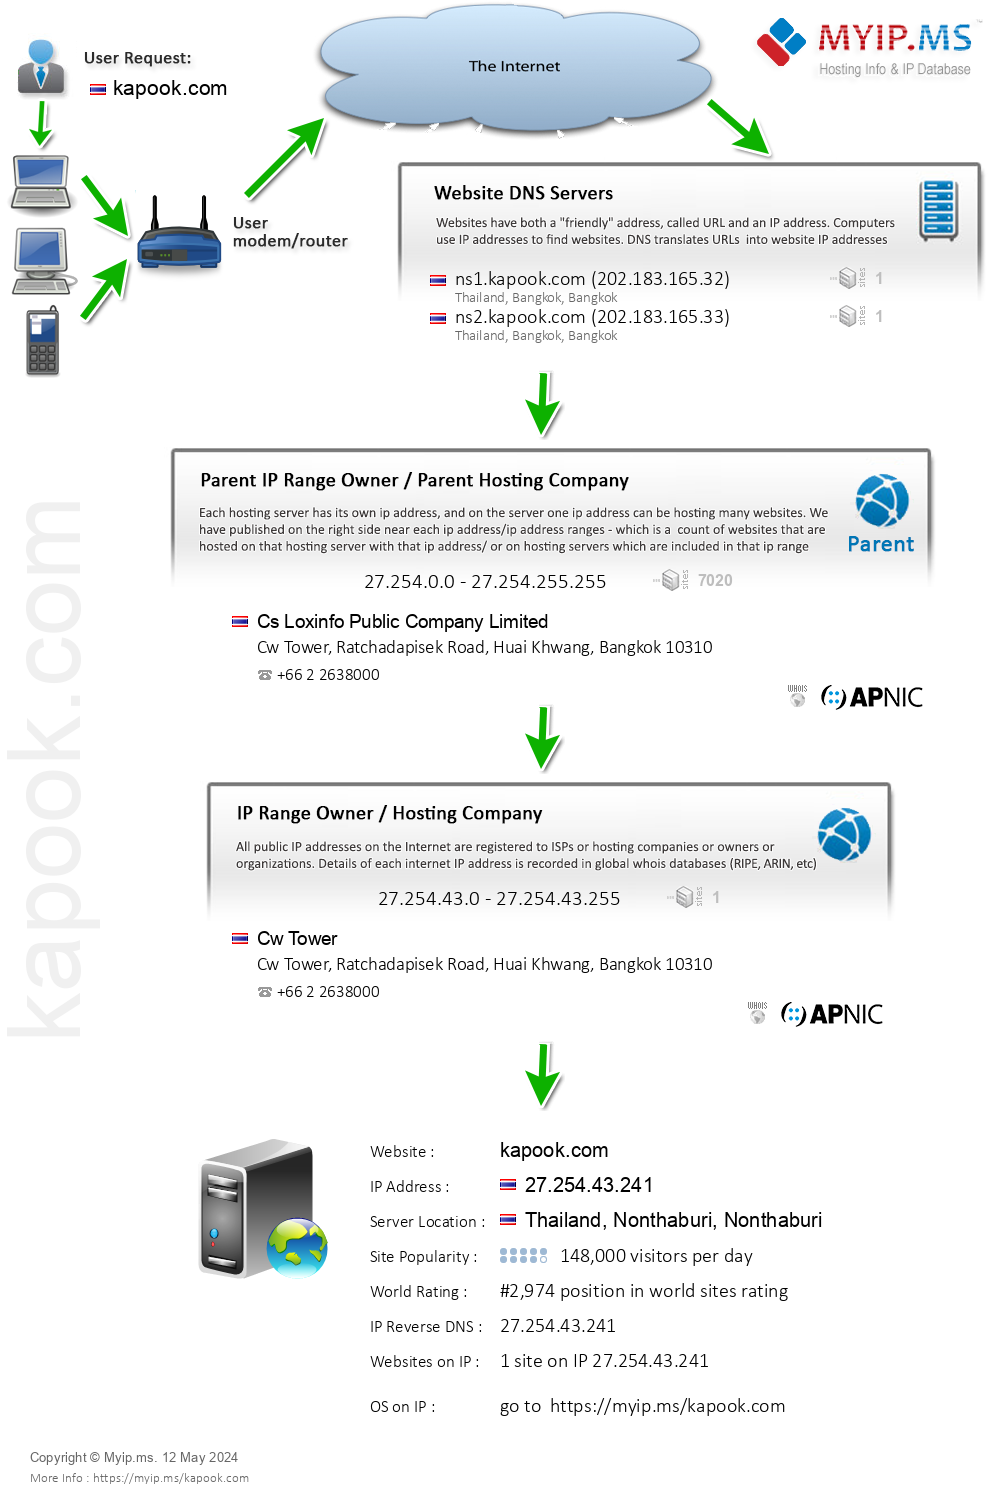 Kapook.com - Website Hosting Visual IP Diagram